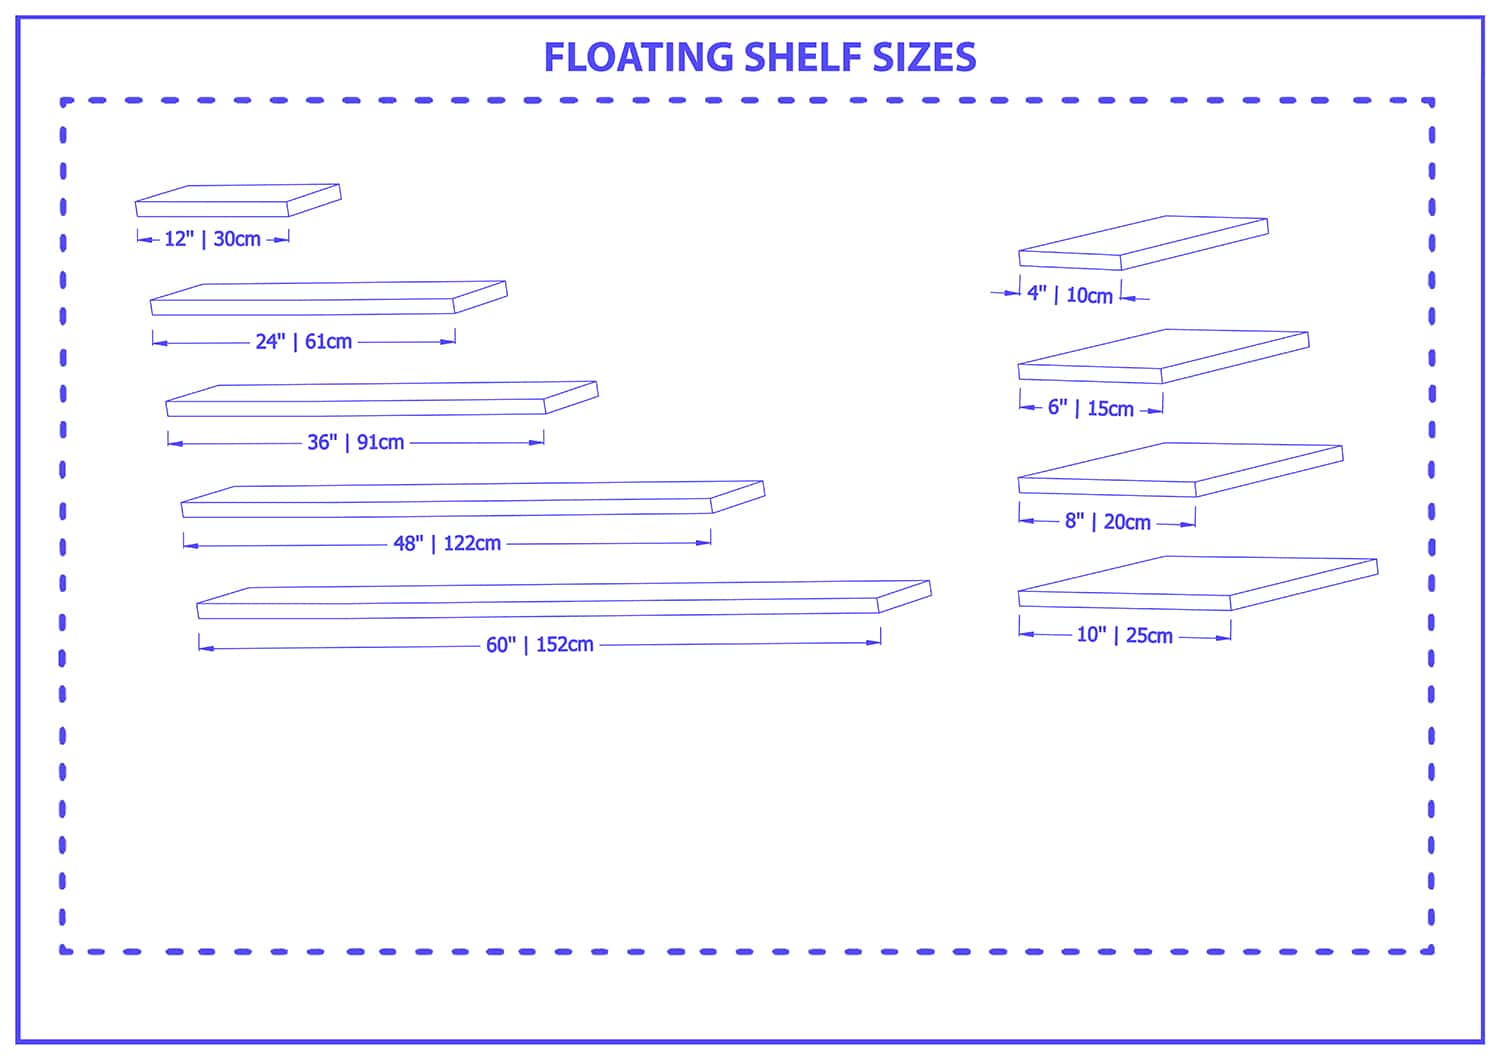 Floating shelf sizes